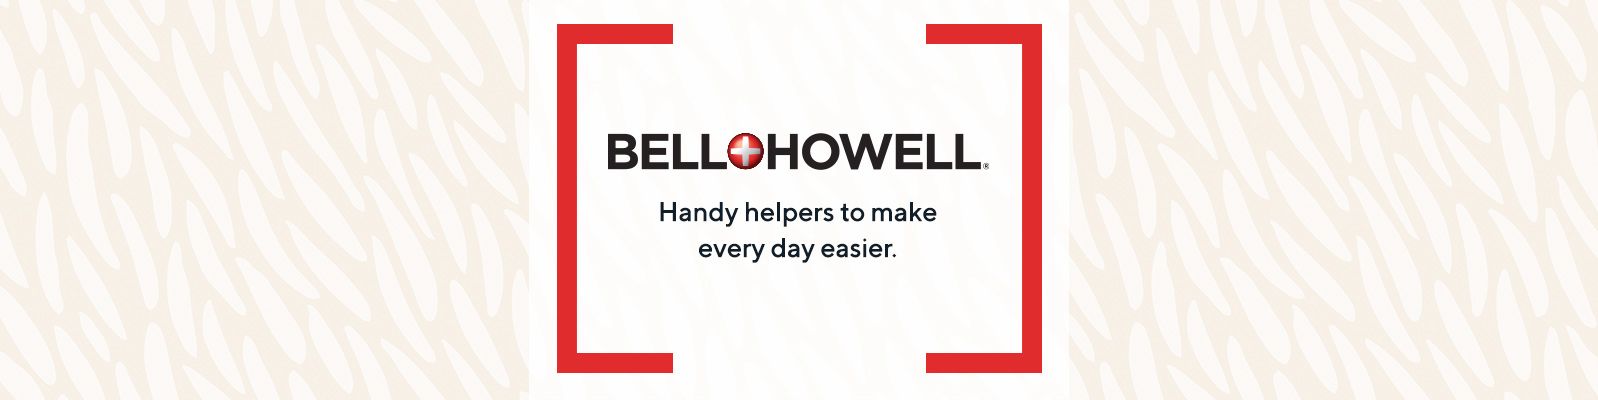 Bell & Howell 300-count Alien Tape Pre-cut Strips 